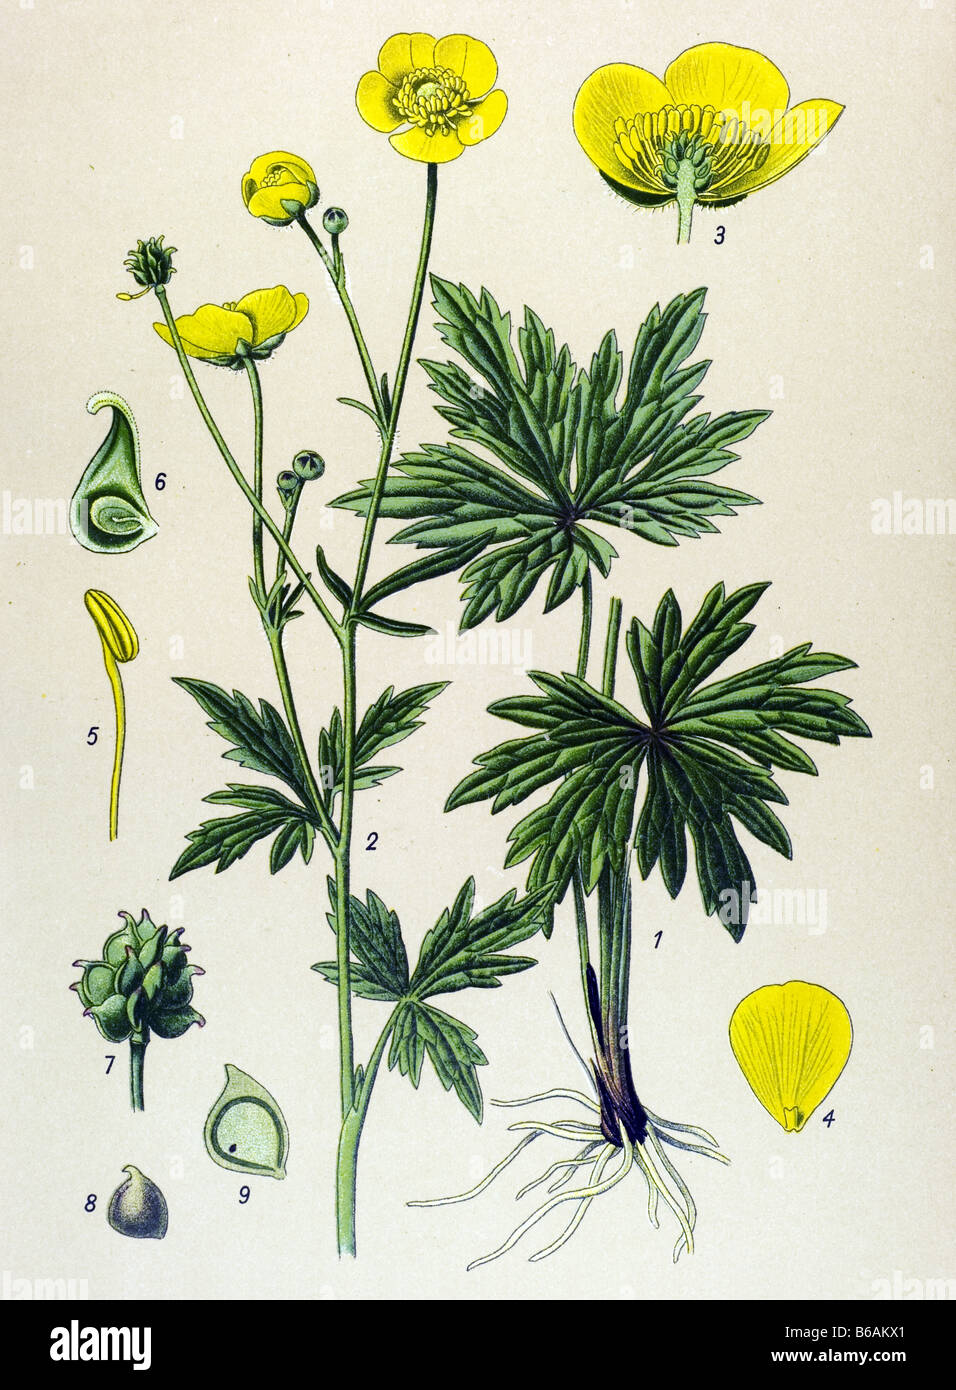 Meadow buttercup, Ranunculus acris poisonous plants illustrations Stock Photo